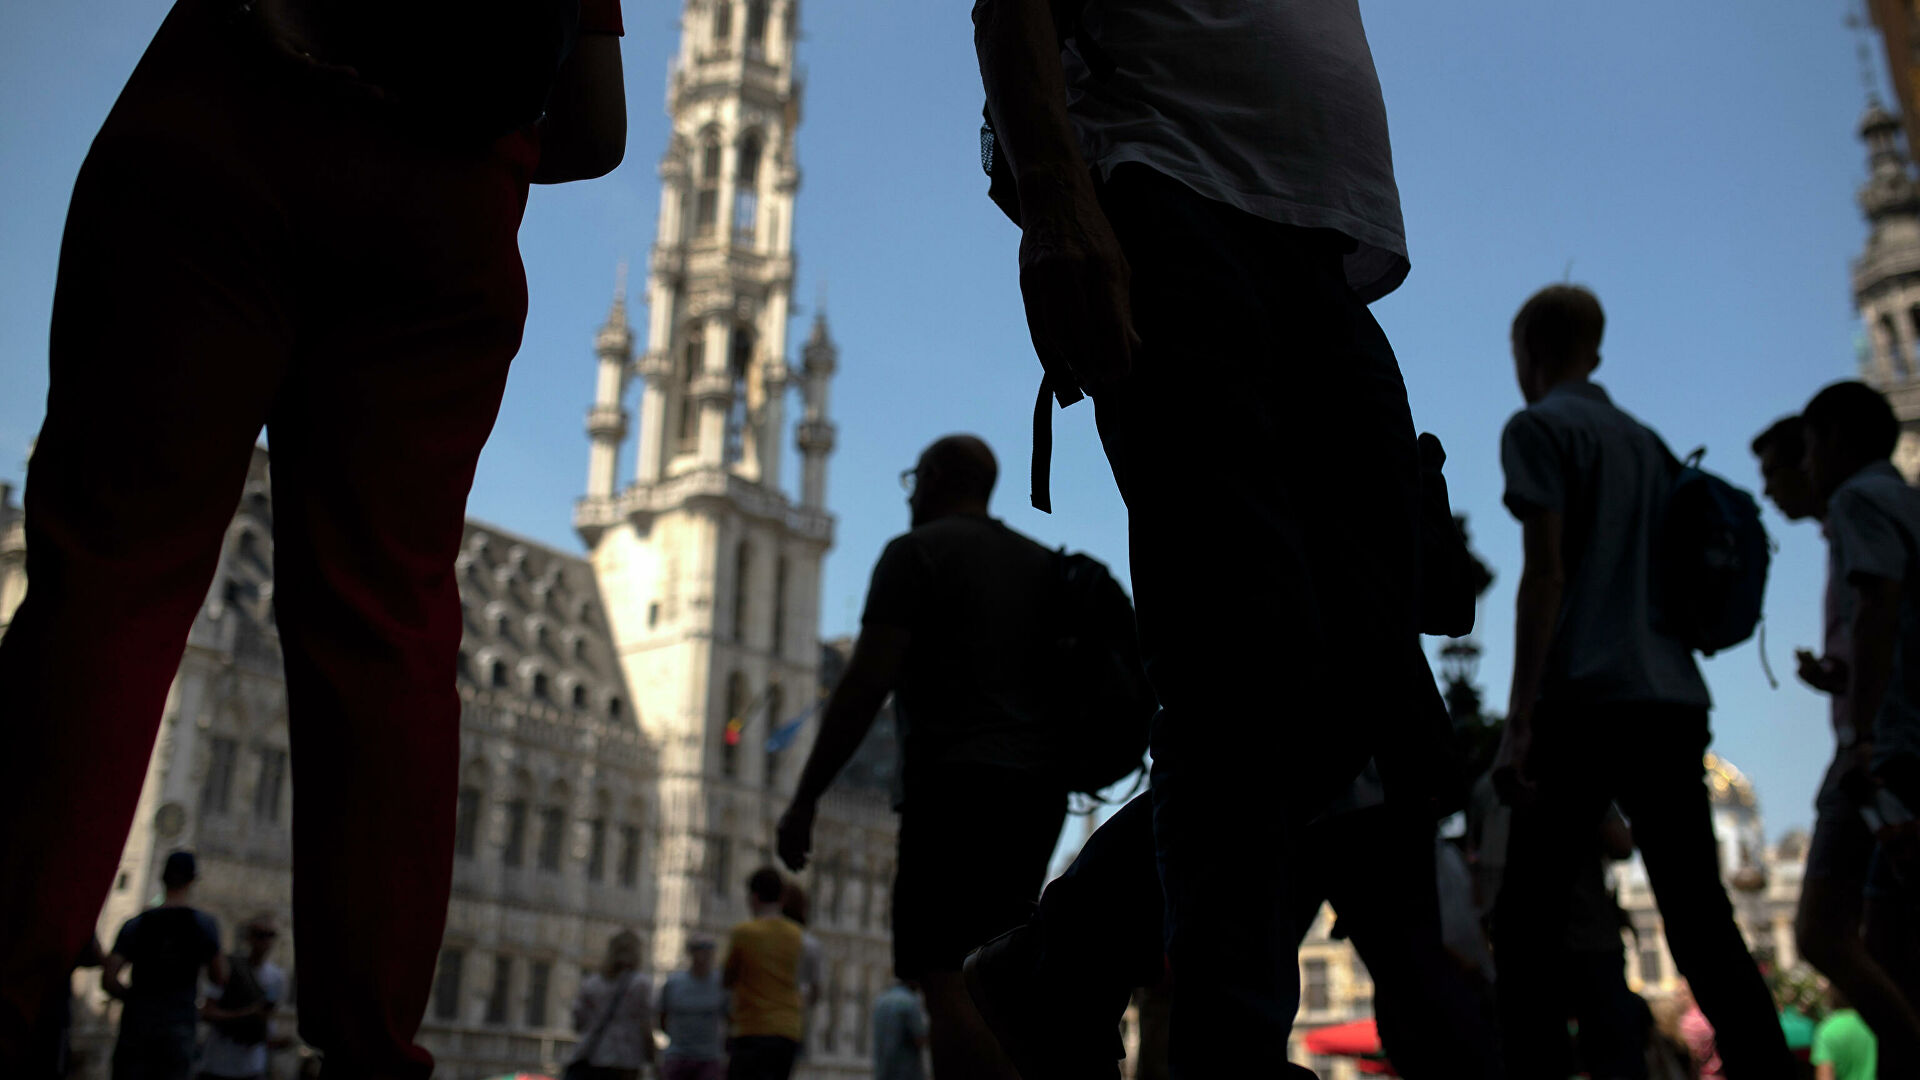 Бельгийцам разрешили требовать у работодателя переход на четырехдневку